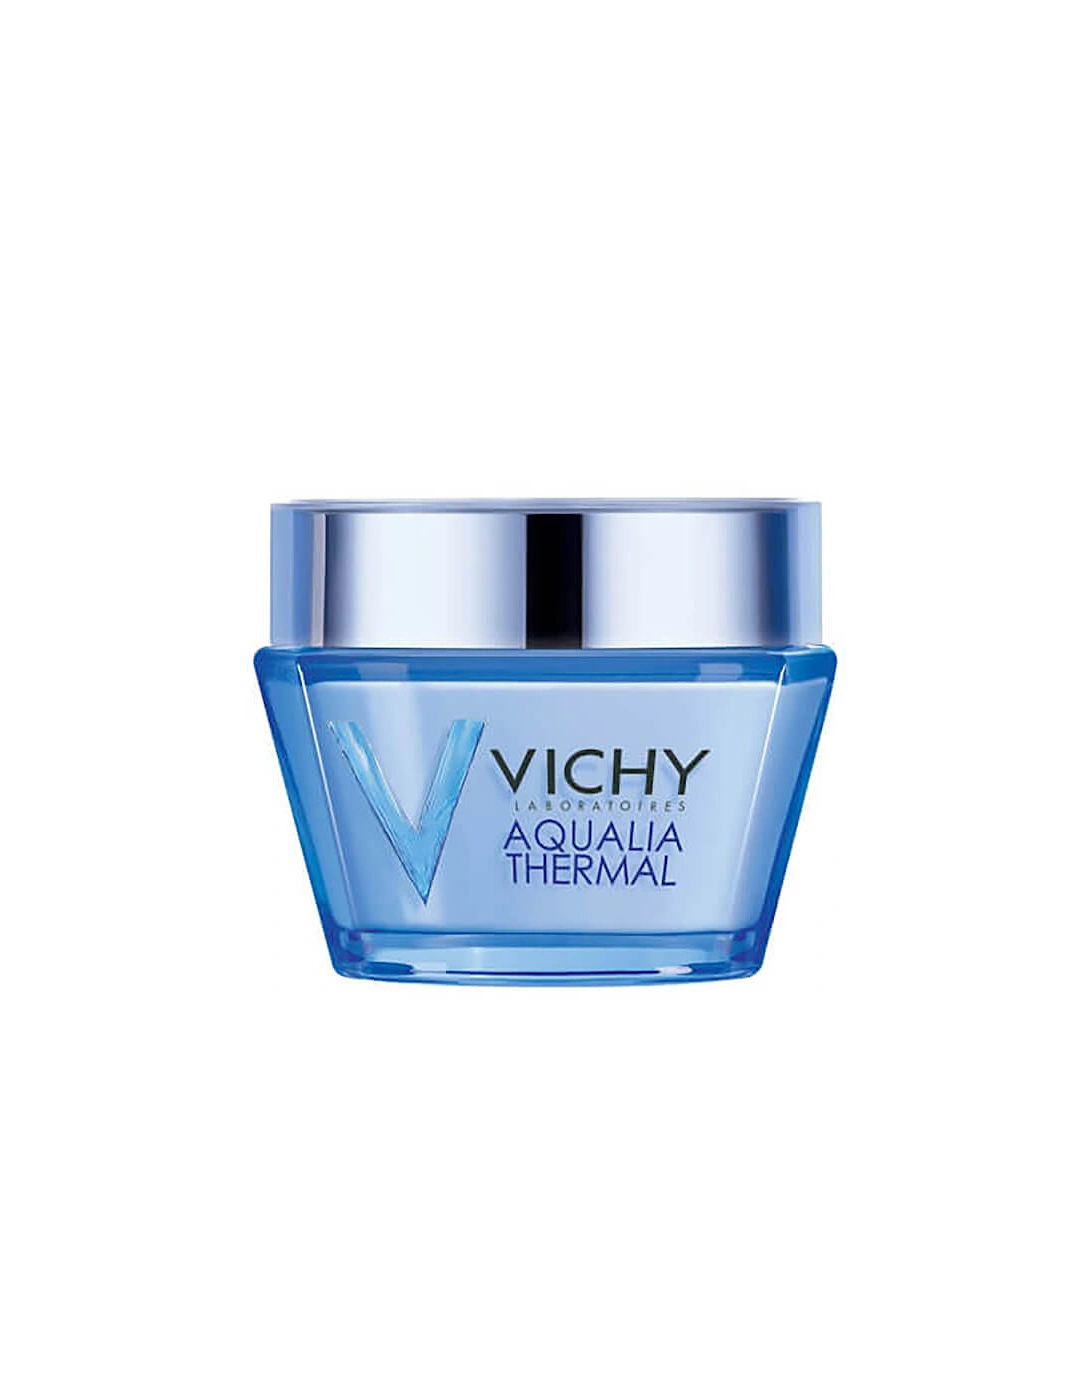 Aqualia Thermal Rich Hydrating Moisturiser 50ml - Vichy, 2 of 1